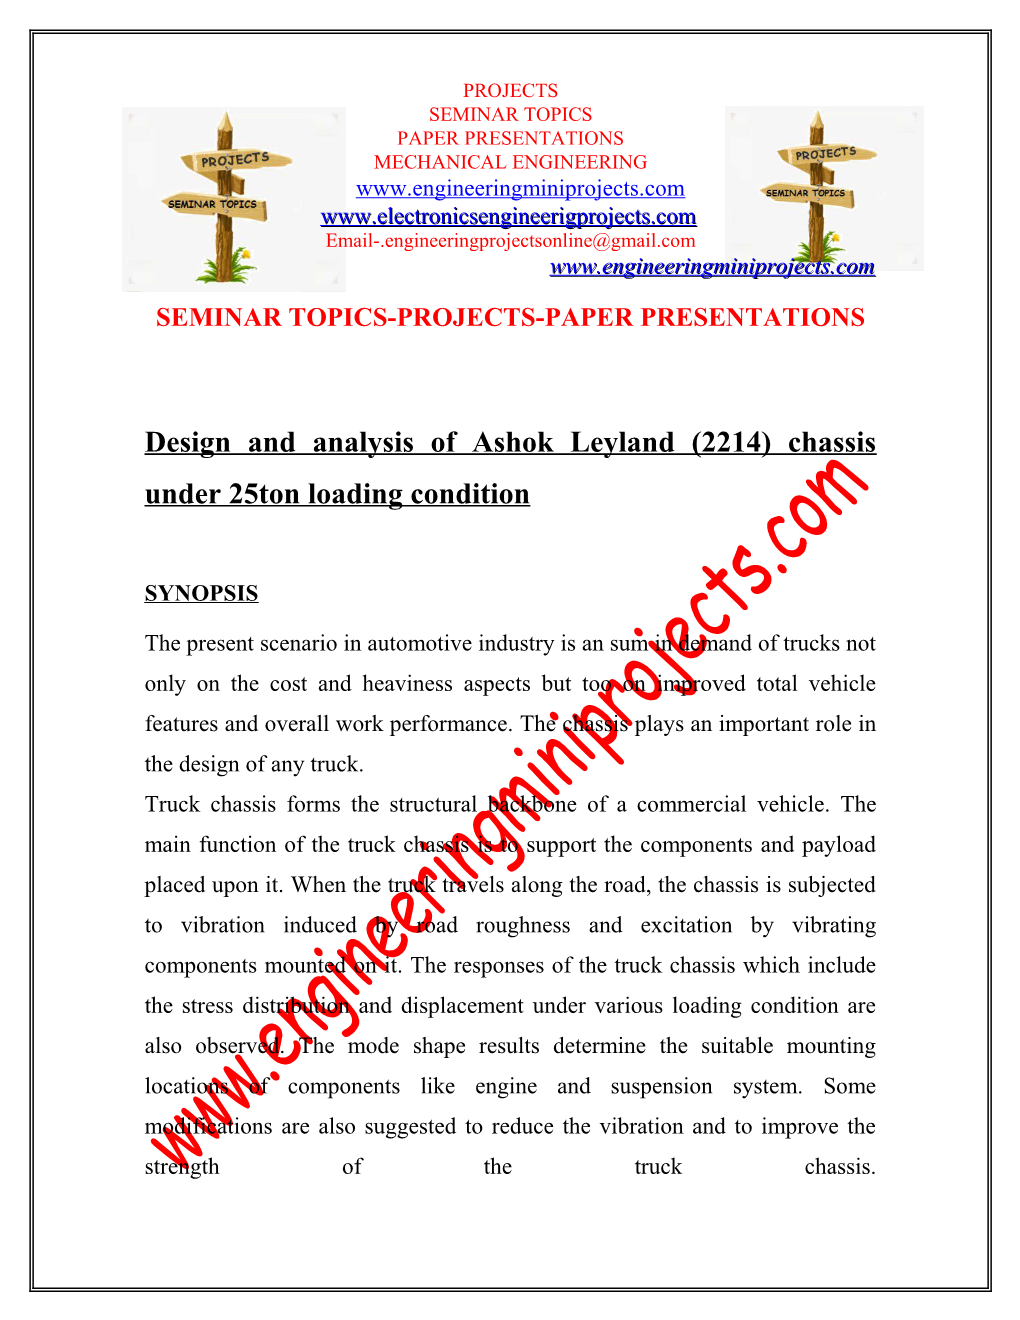 Seminar Topics-Projects-Paper Presentations s1